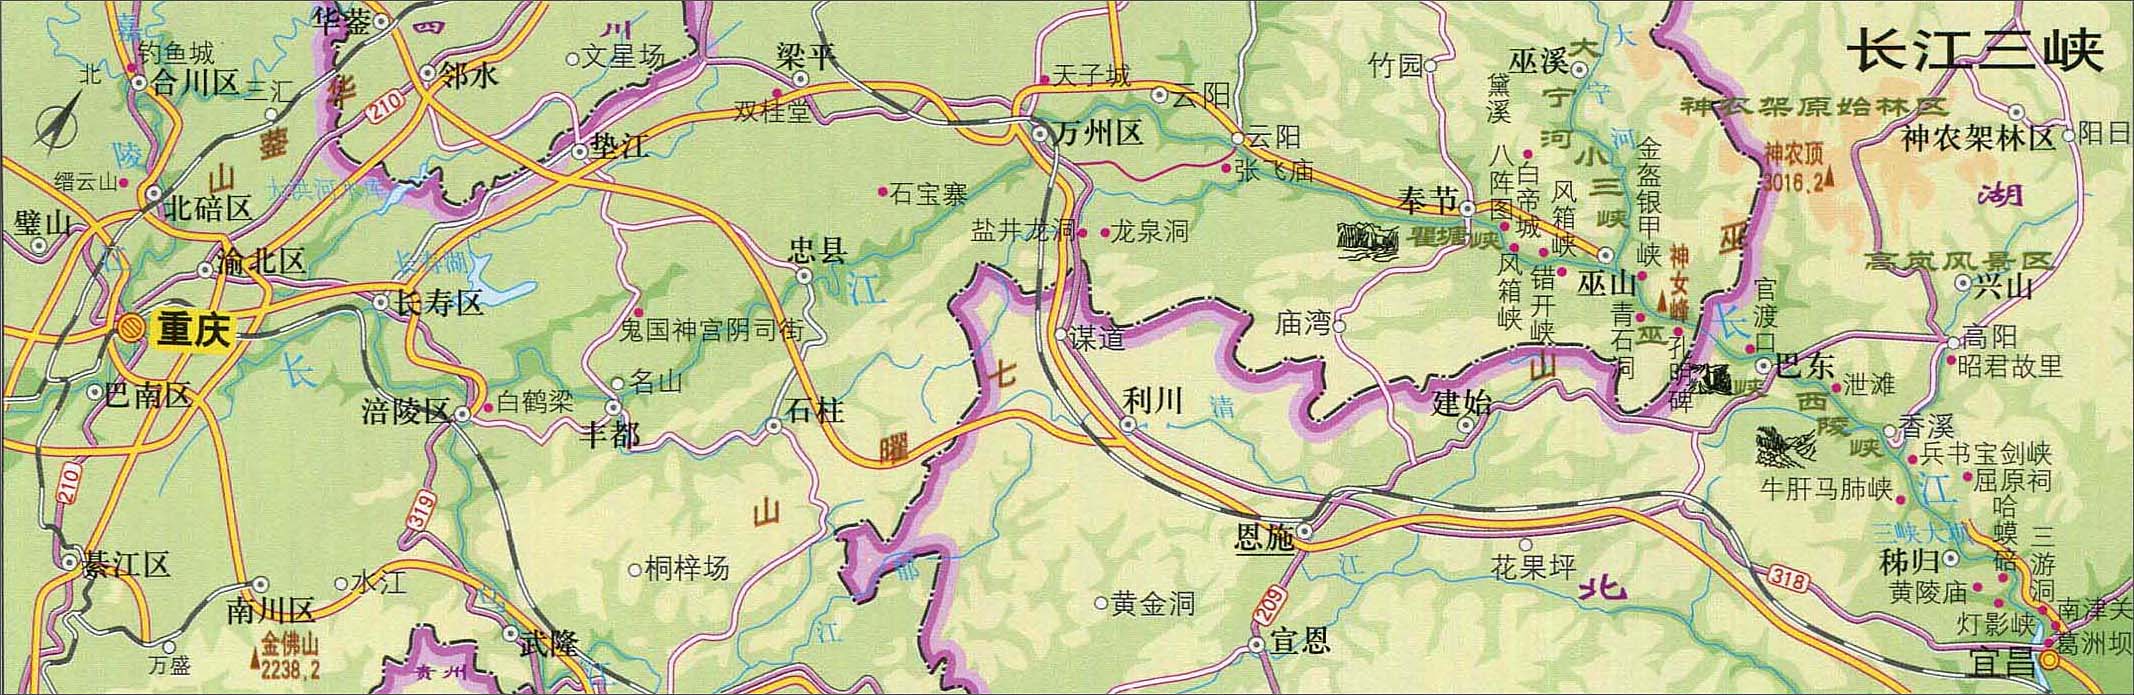 中国山脉地形图全图,中国山脉地形图全图高清版大图